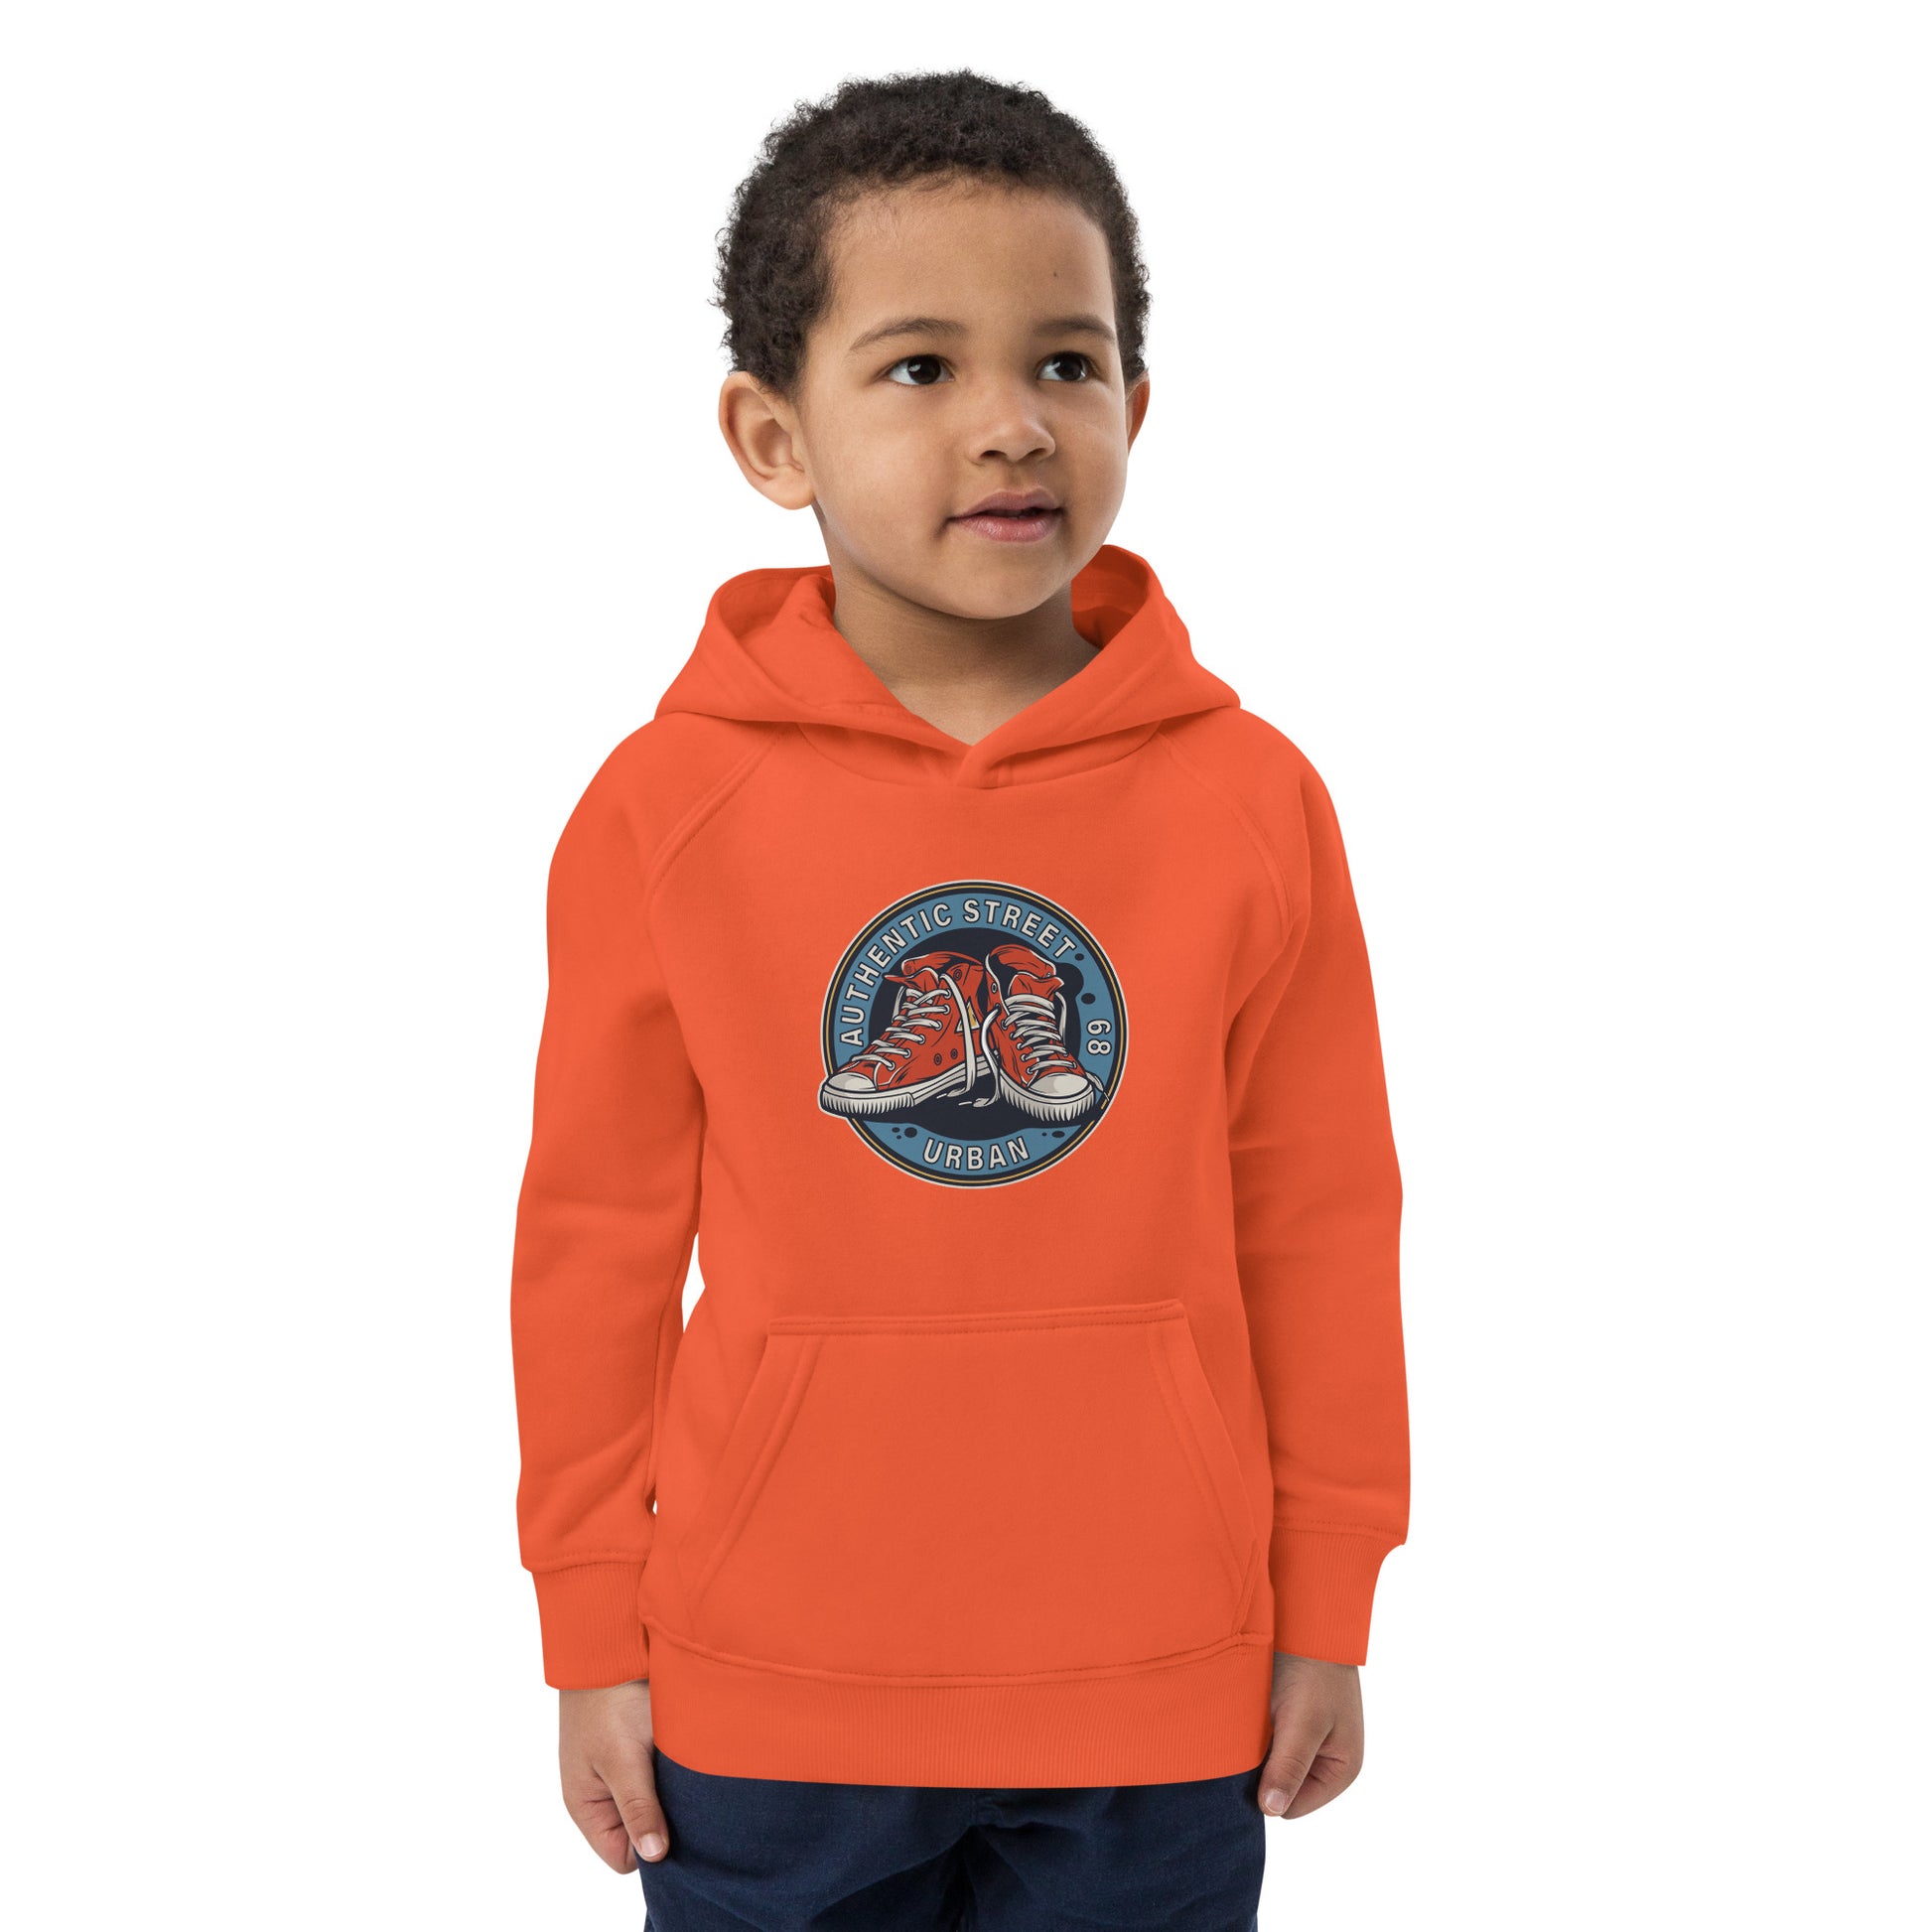 Urban Street - Kids eco hoodie - HobbyMeFree